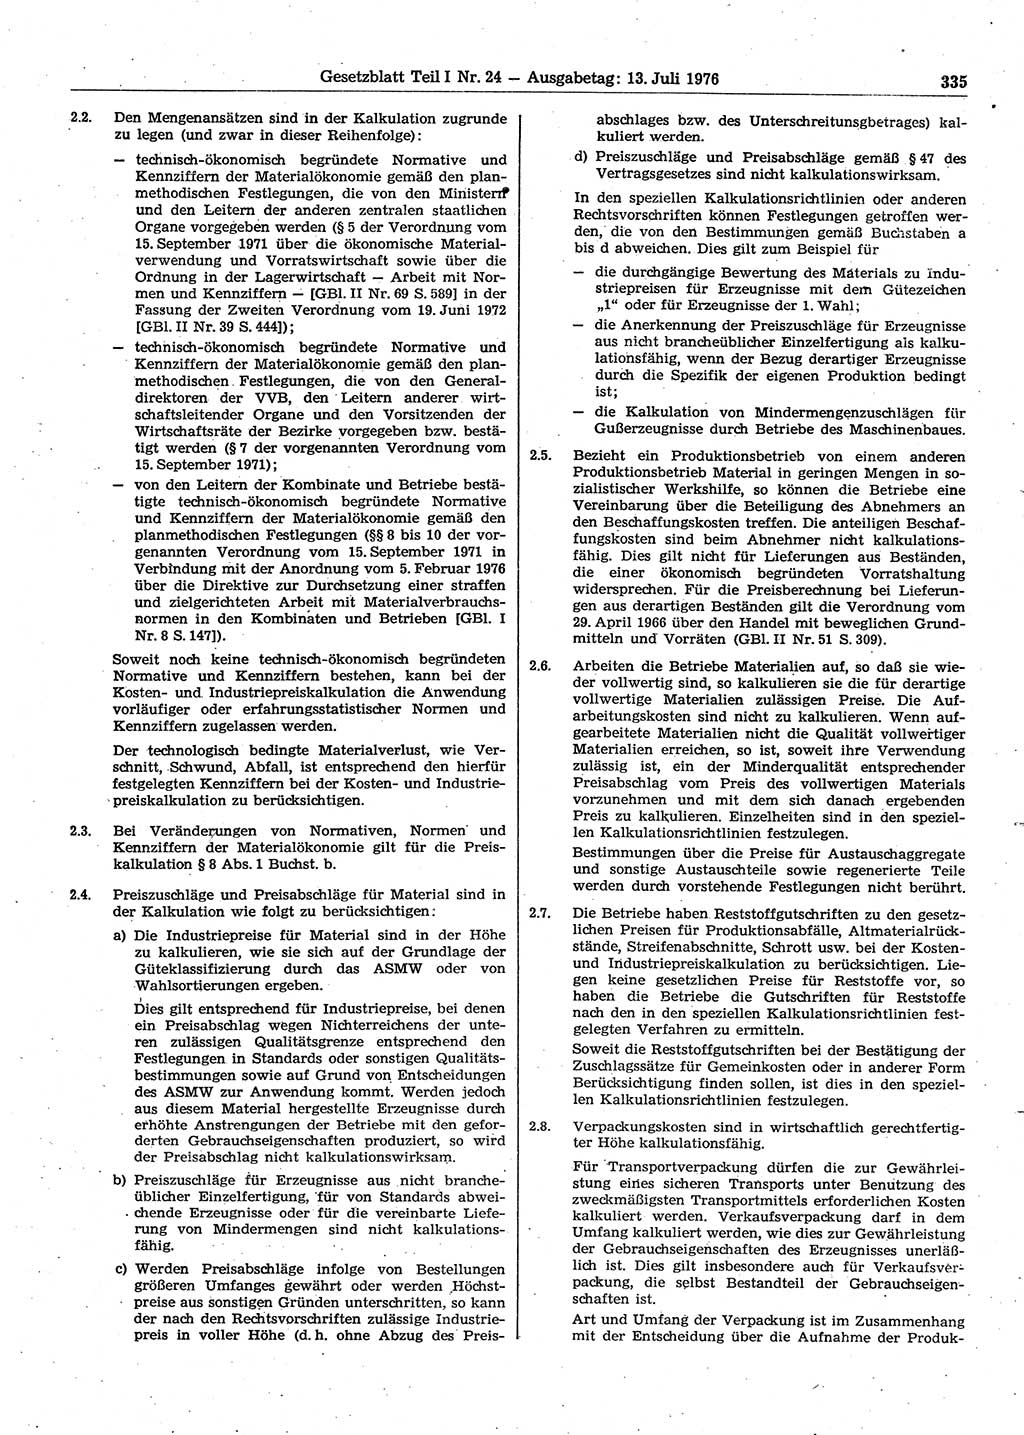 Gesetzblatt (GBl.) der Deutschen Demokratischen Republik (DDR) Teil Ⅰ 1976, Seite 335 (GBl. DDR Ⅰ 1976, S. 335)